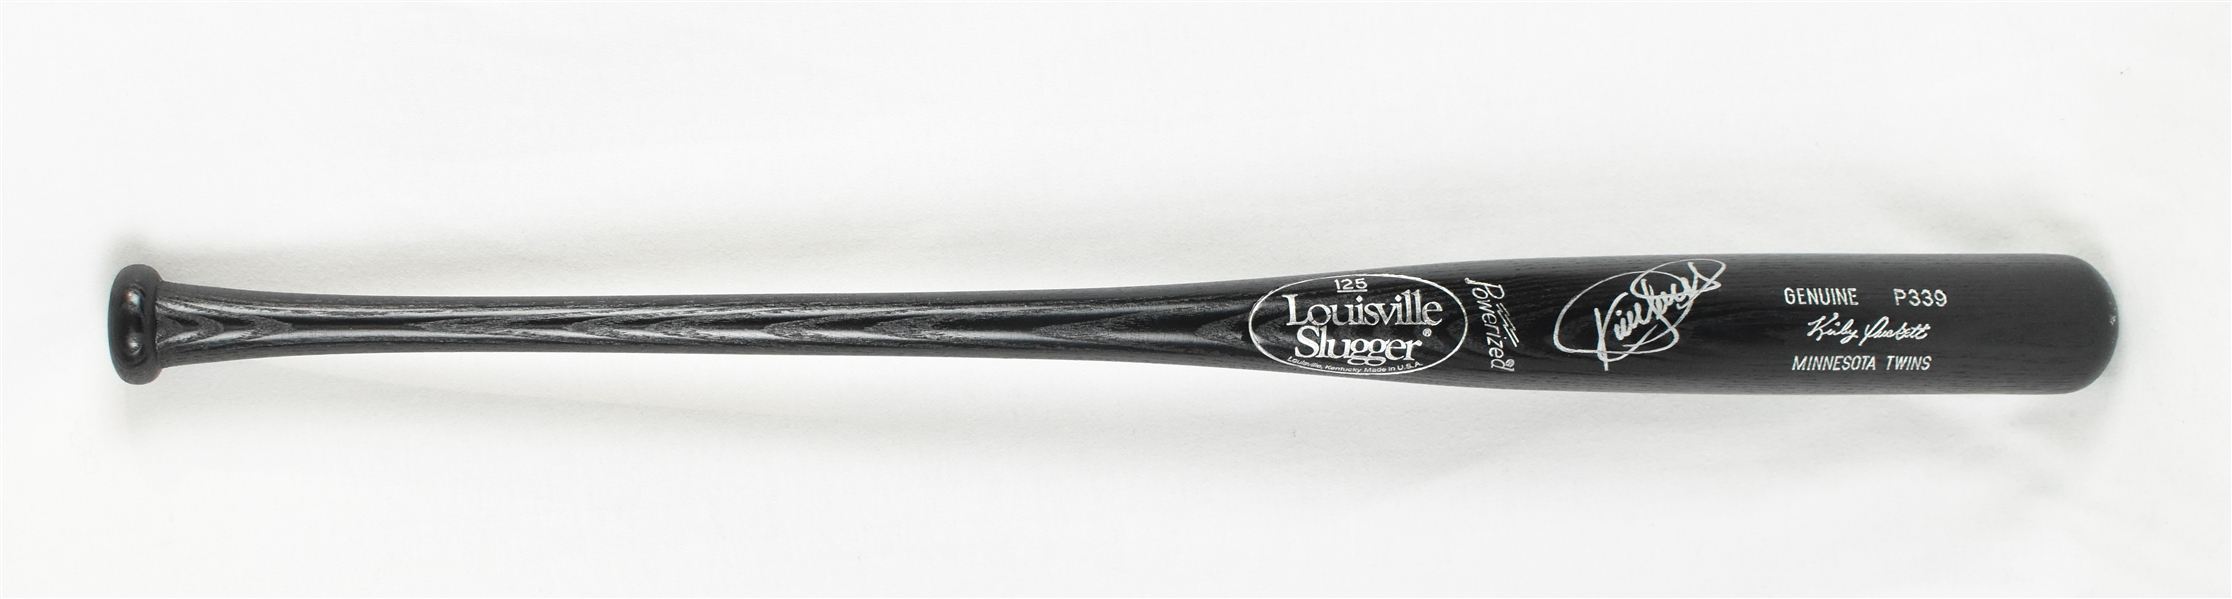 Kirby Puckett Autographed P339 Louisville Slugger Bat